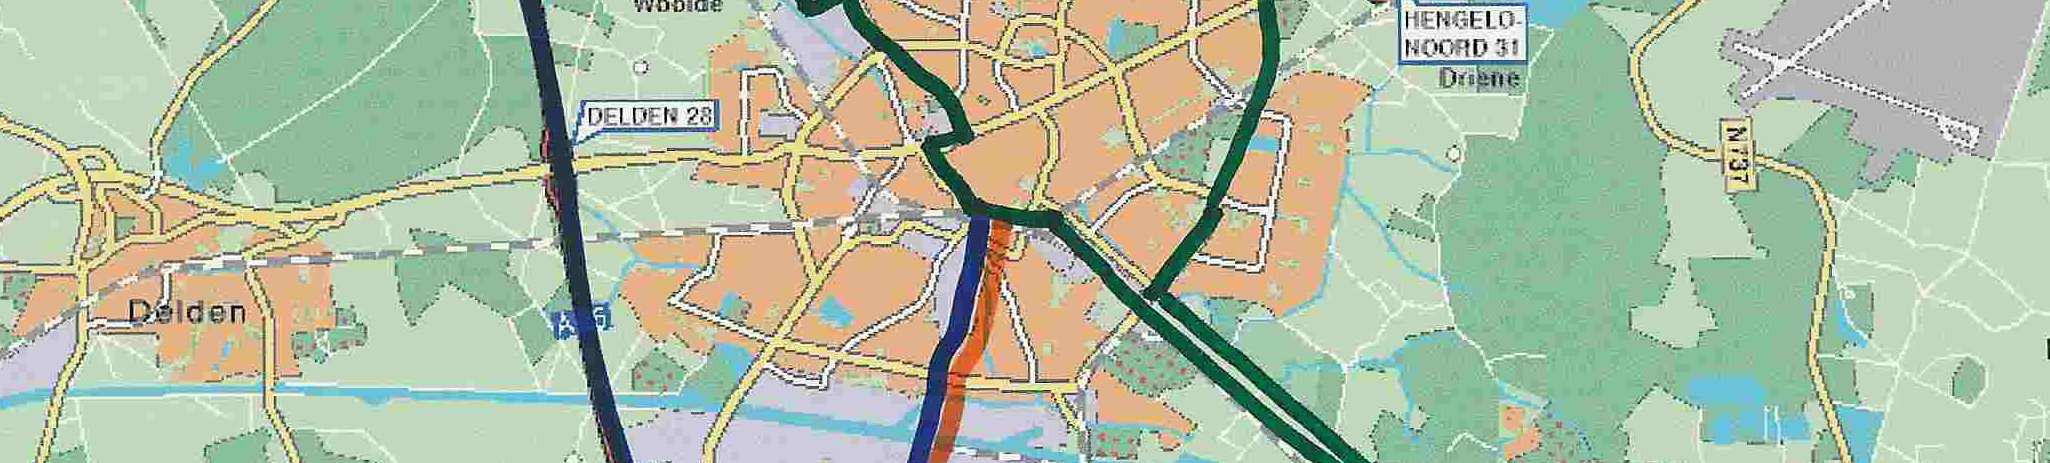 De Krakeling, snelbuslijn tussen Hengelo en Enschede (afgebeeld in groen).